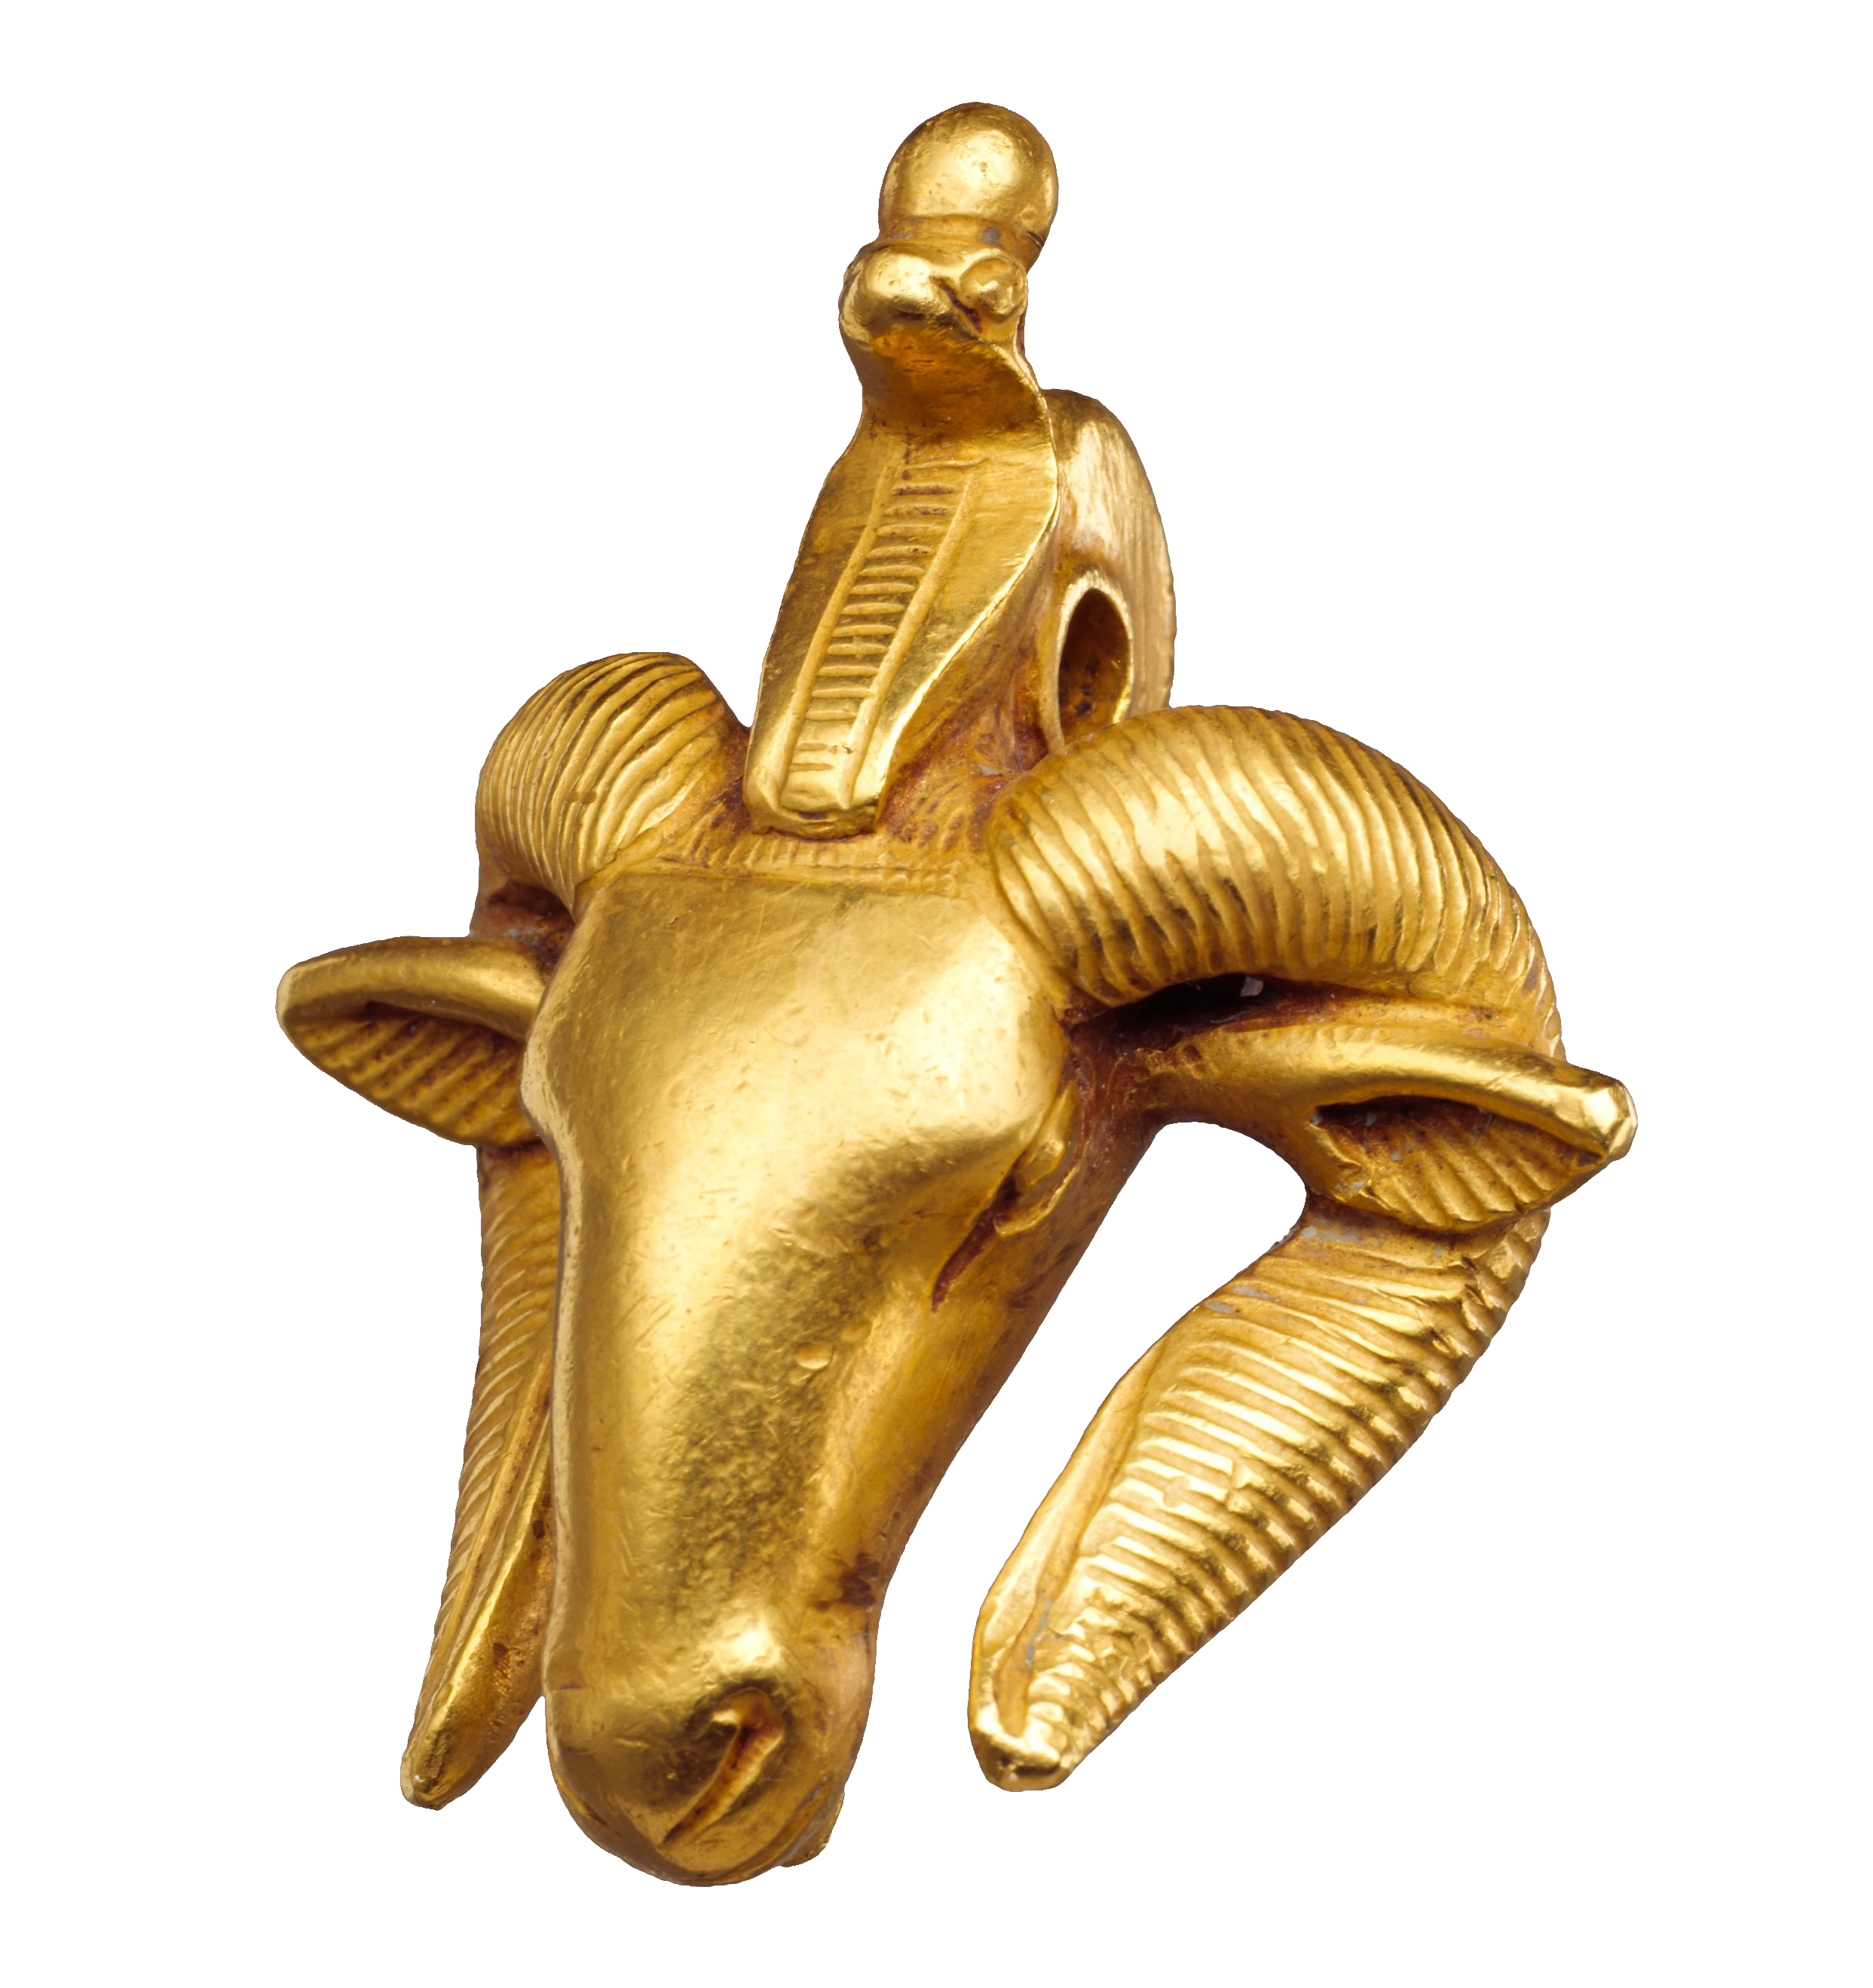 Ram's-head Amulet, Kingdom of Kush